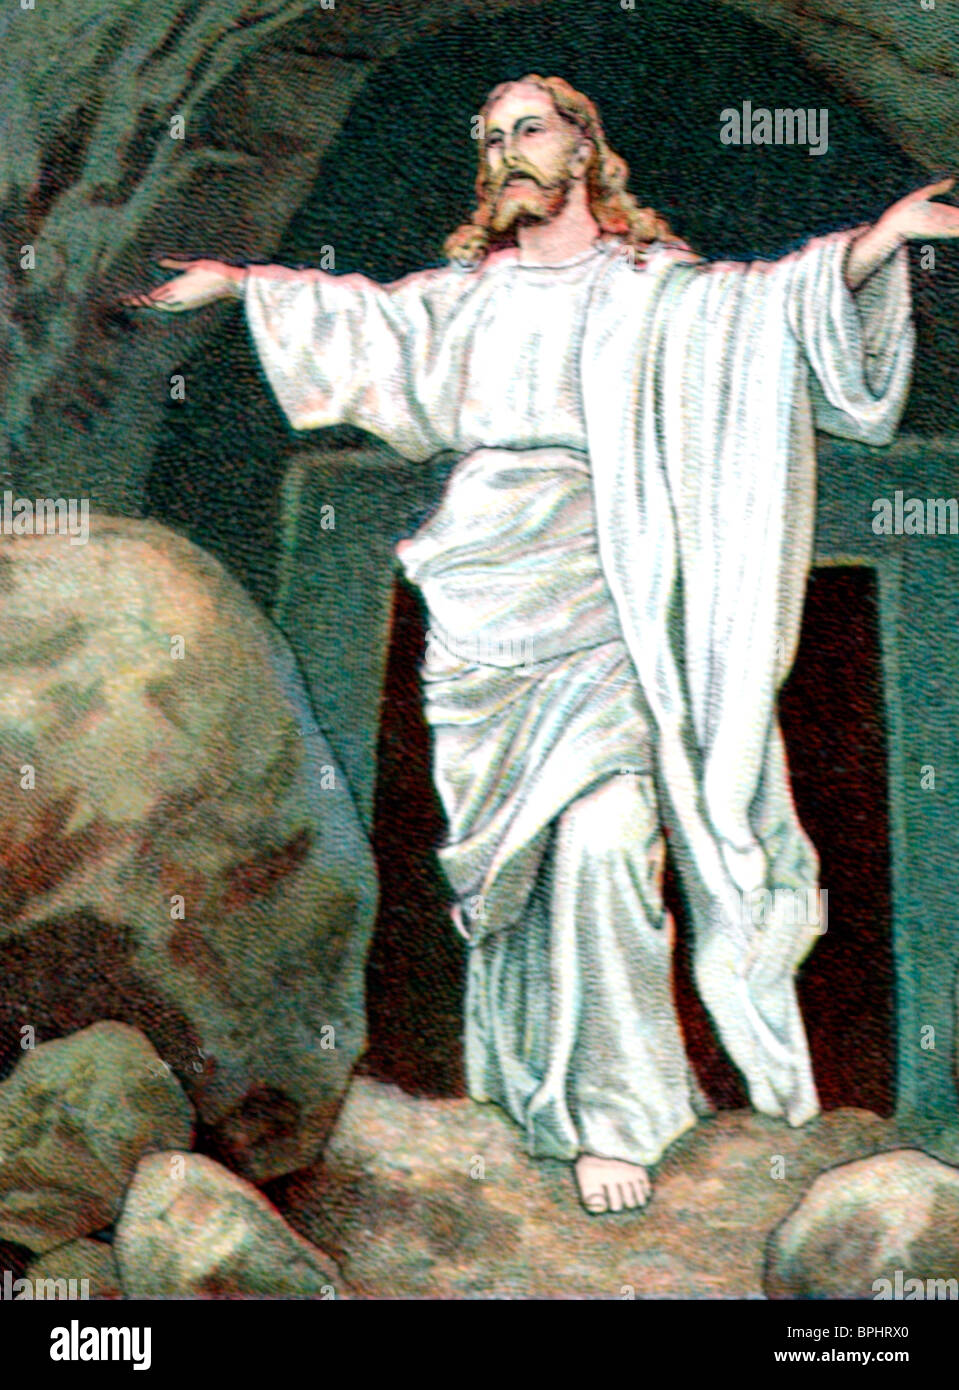 Die Auferstehung Jesu oder Anastasis, der christliche Glaube, dass Gott Jesus am dritten Tag nach seiner Kreuzigung auferweckt hat. Alter Sonntagsschulgarten von Jesus vor seinem Felsgrab. Stockfoto